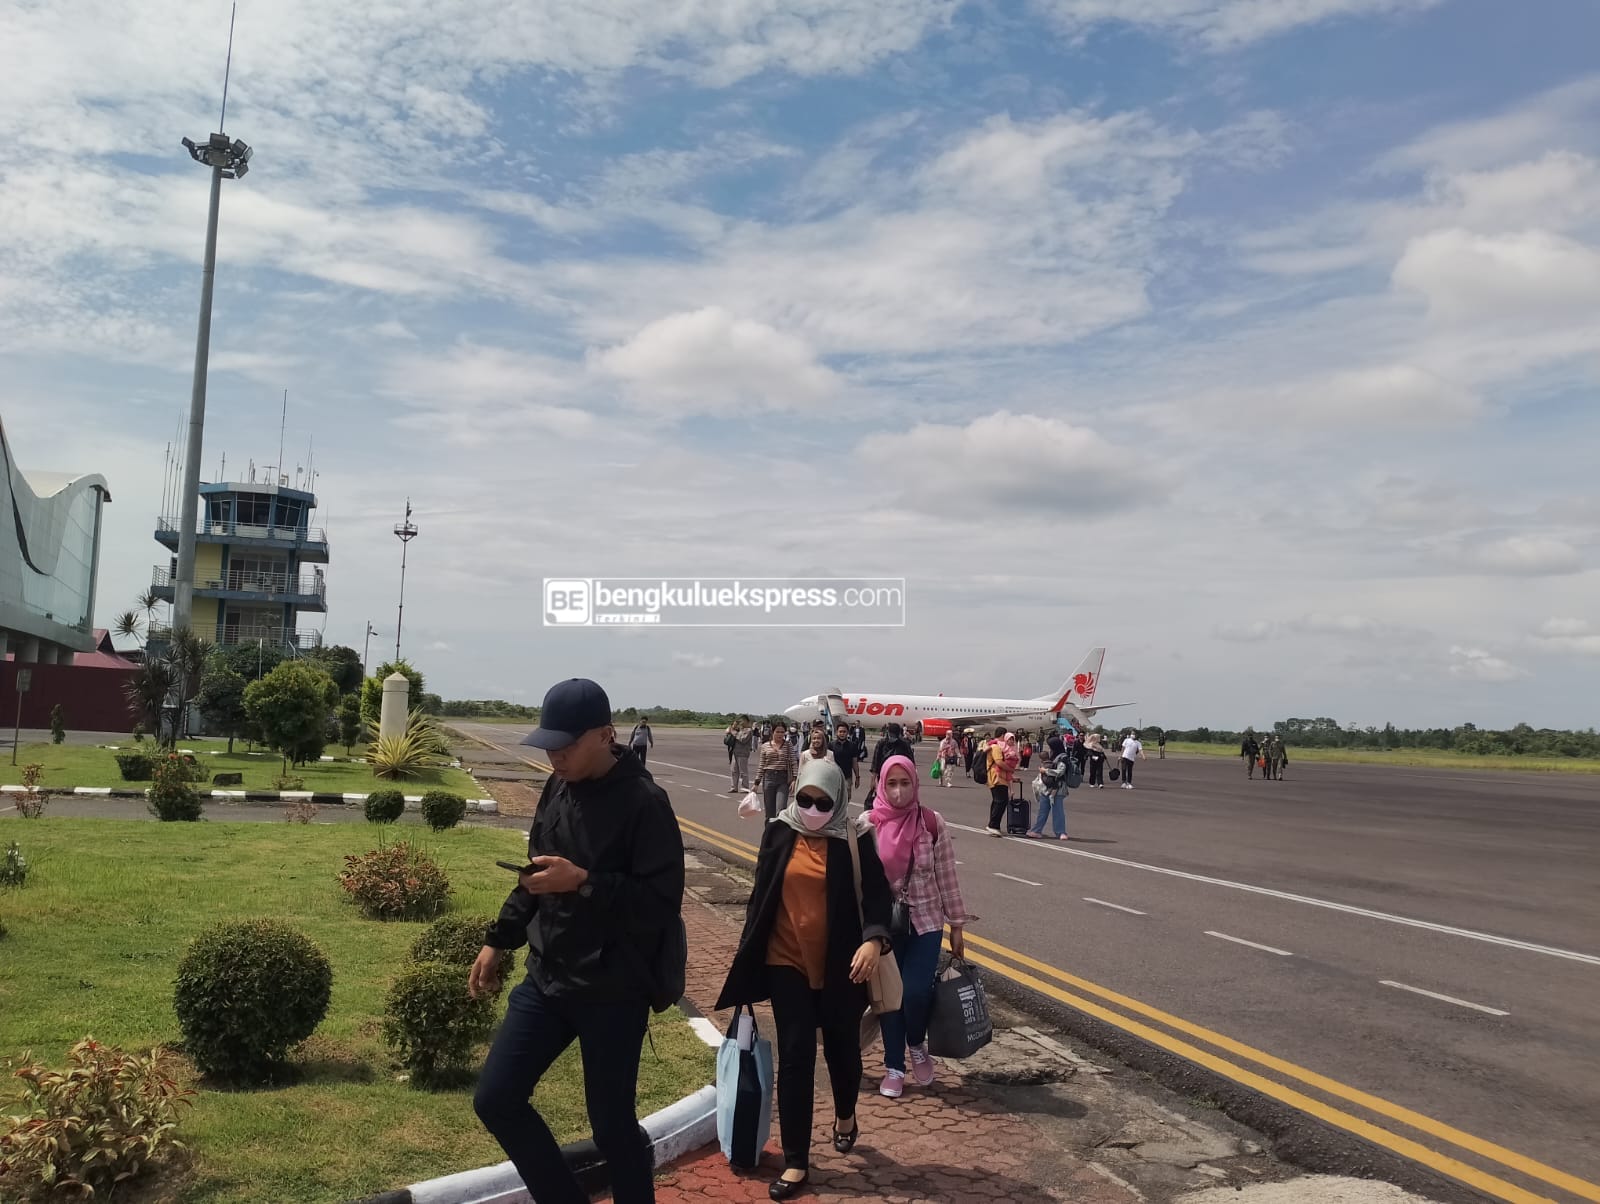 Bandara Fatmawati Soekarno Bengkulu Catat 2 Ribu Penumpang Lakukan Aktivitas PP Sejak Arus Mudik Dimulai